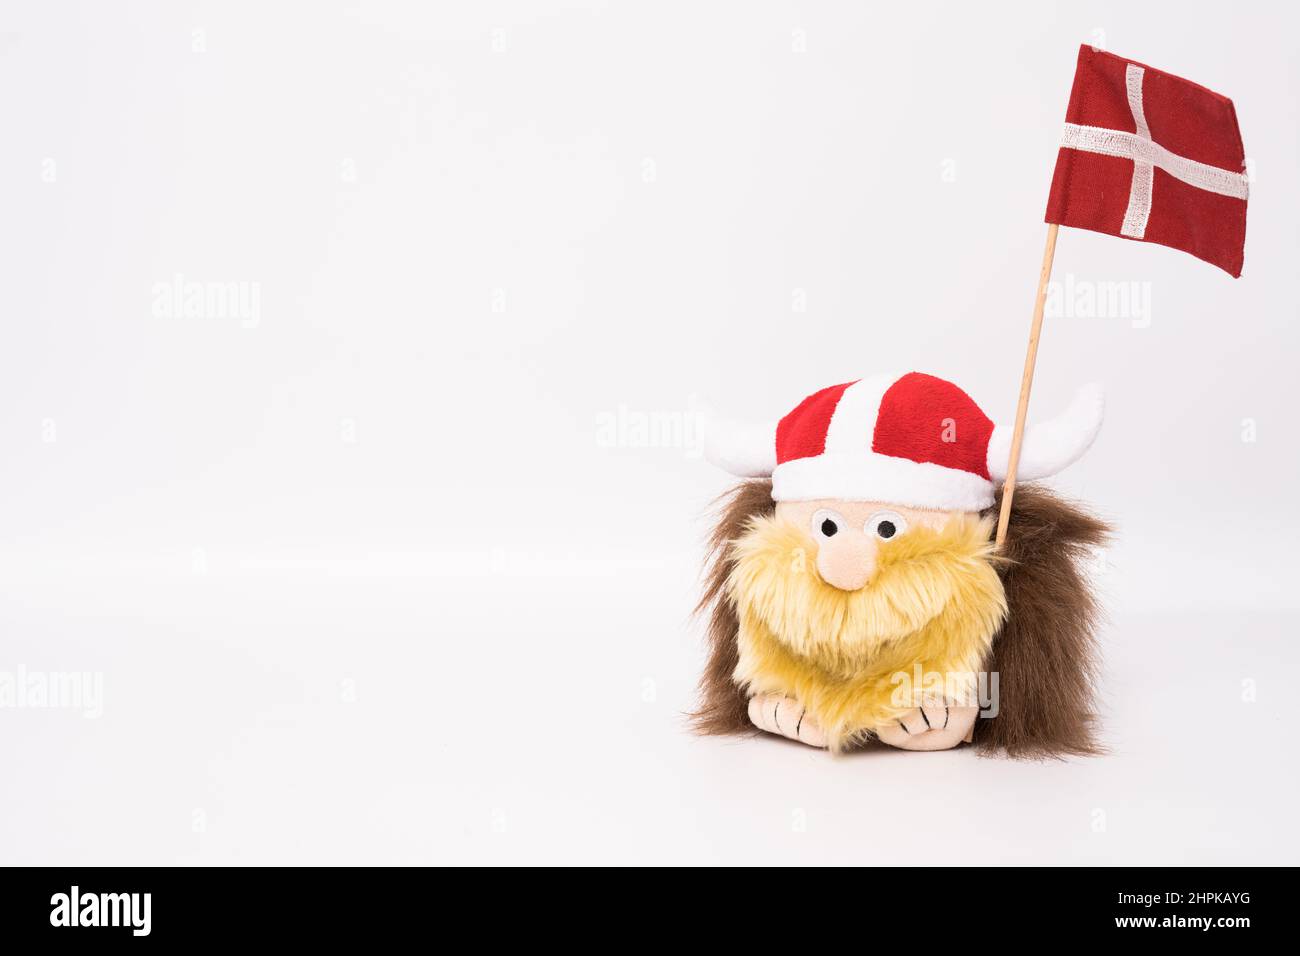 Viking warrior with danish flag isolated on white background. Stock Photo